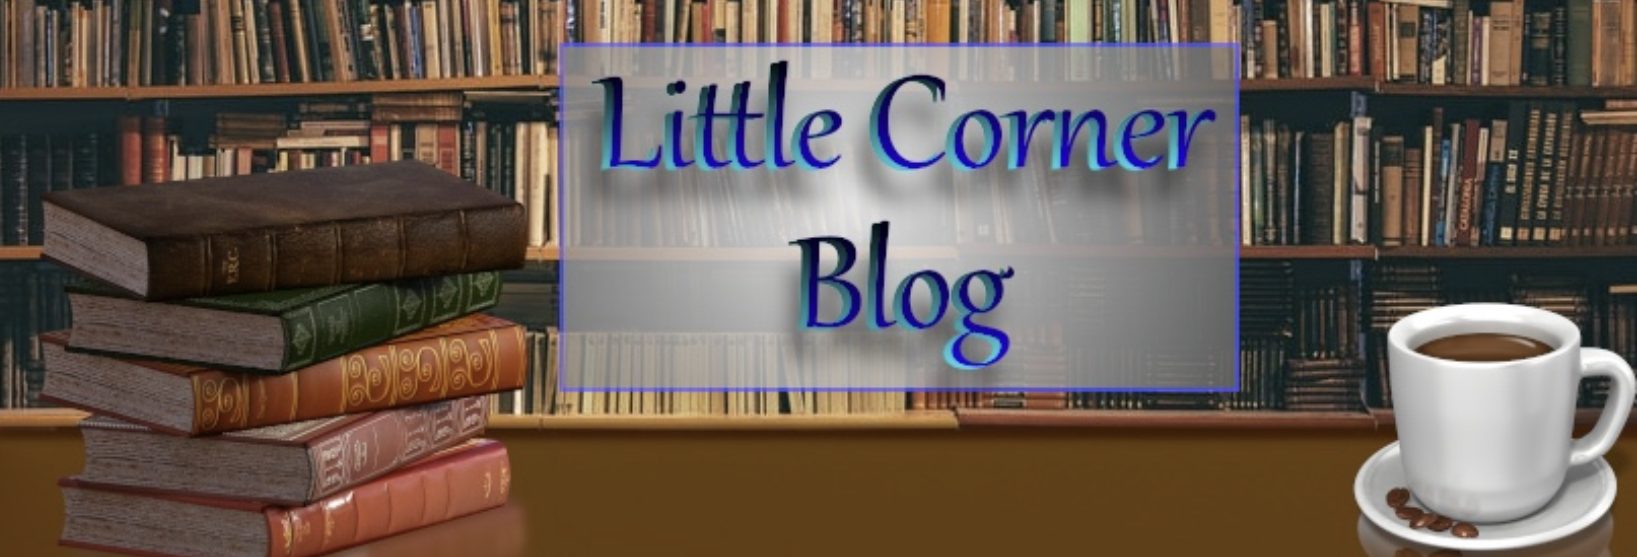 Little Corner Blog